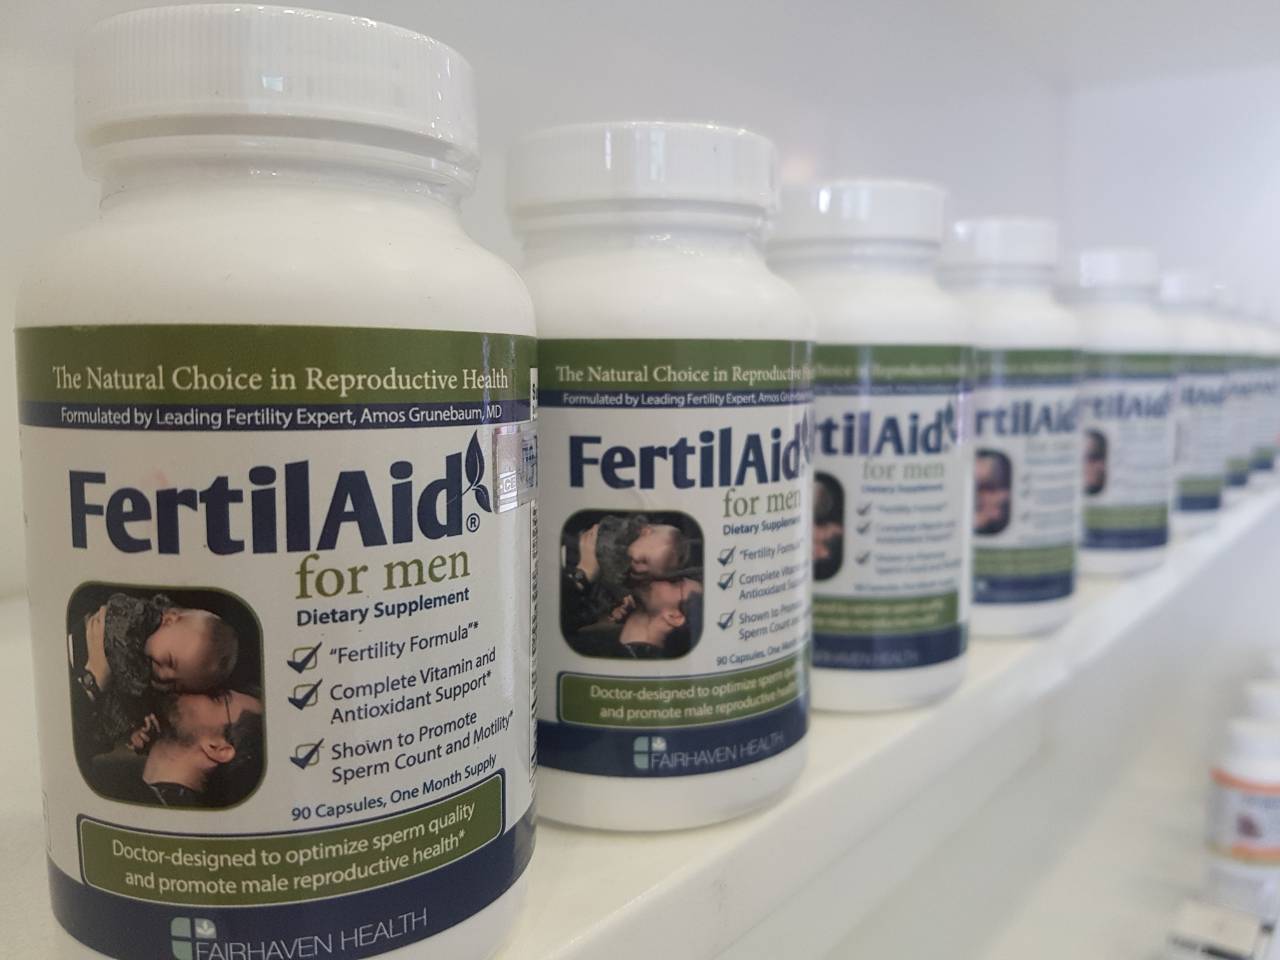 Fertilaid for women - viên uống hỗ trợ sinh sản cho nữ và tăng khả năng thụ thai 90 viên